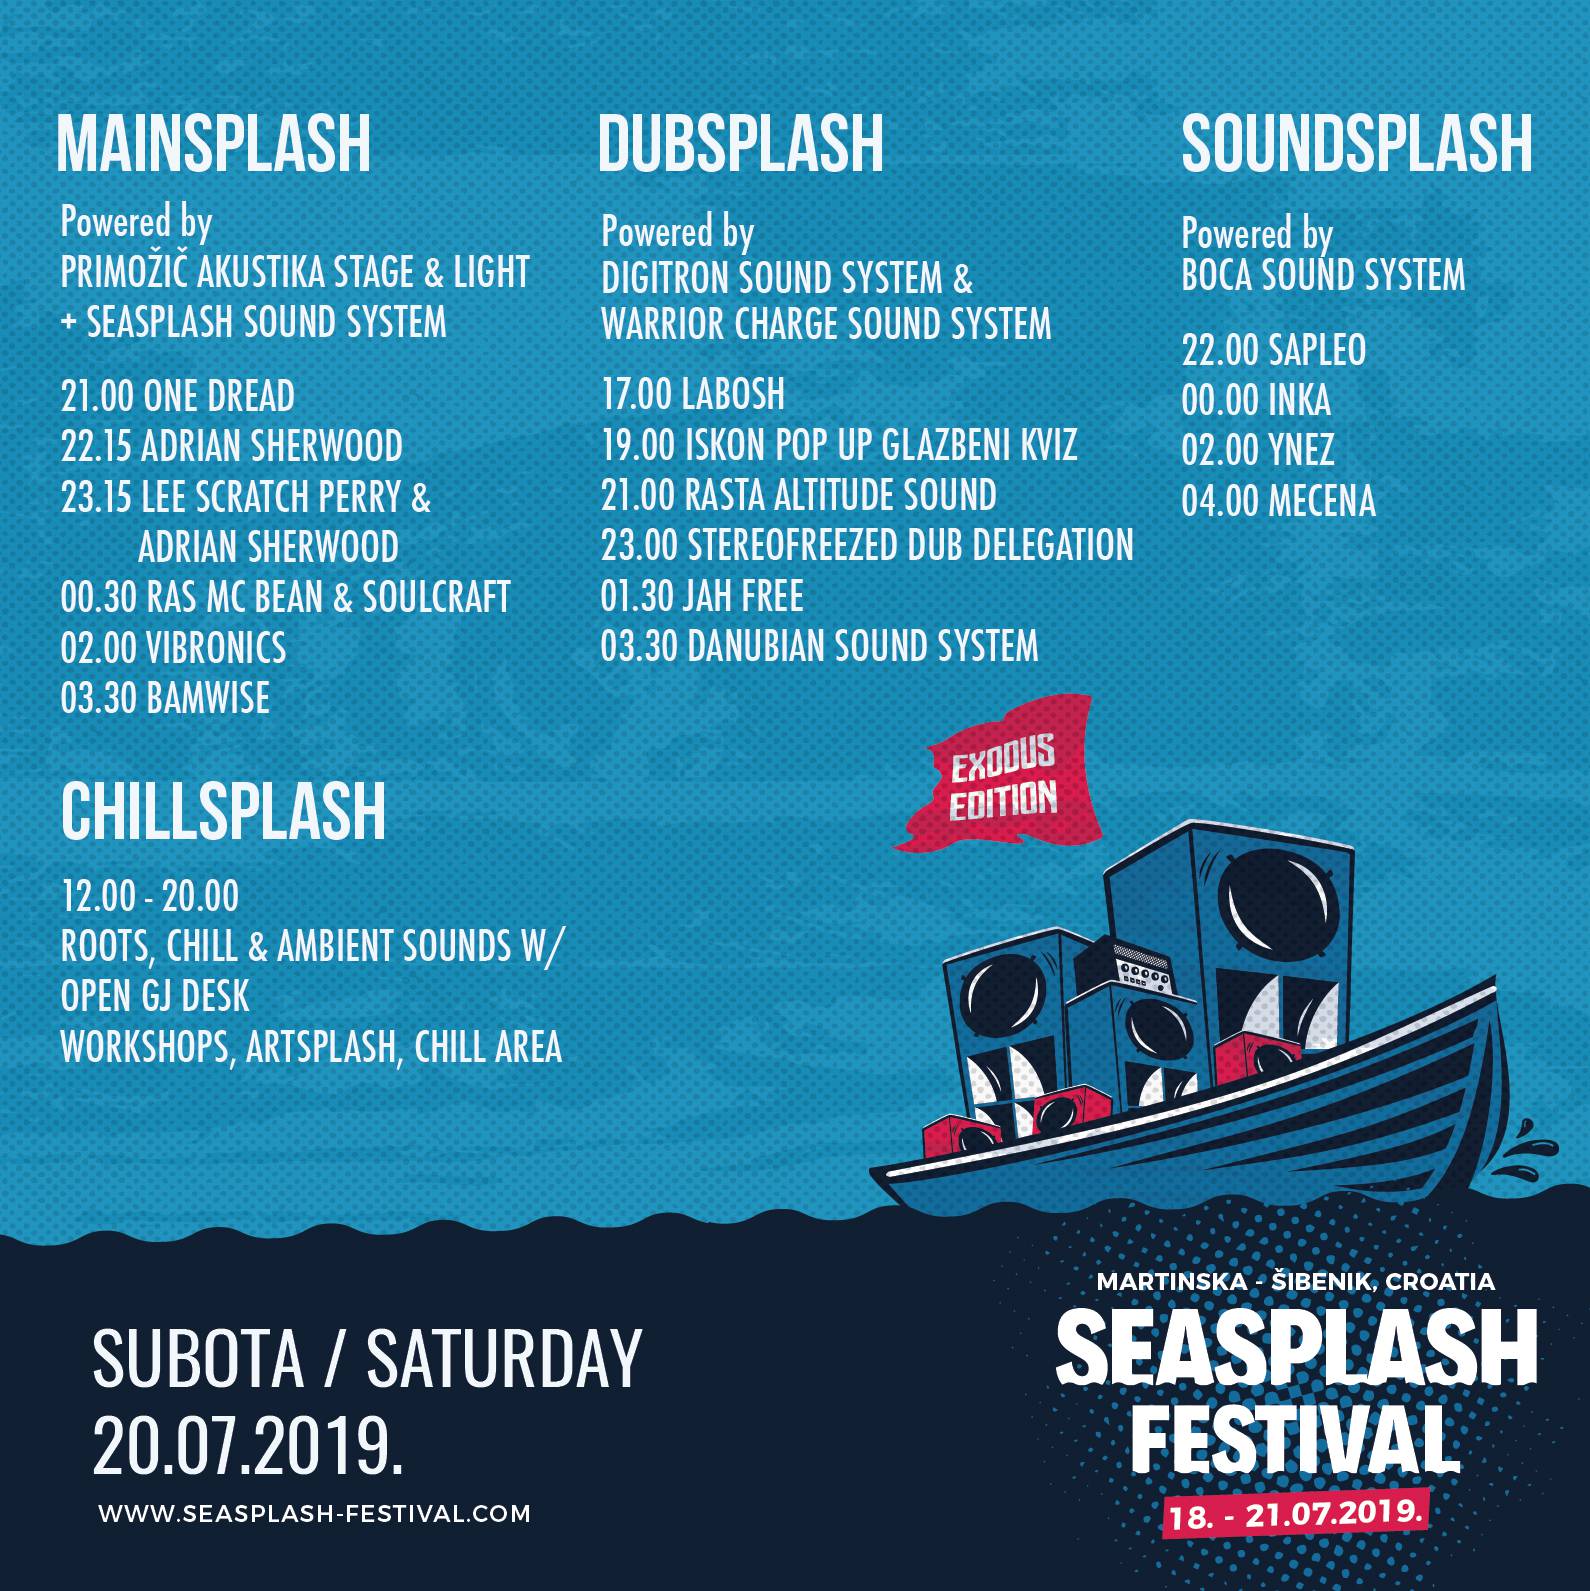 Objavljena satnica 17. Seasplash festivala